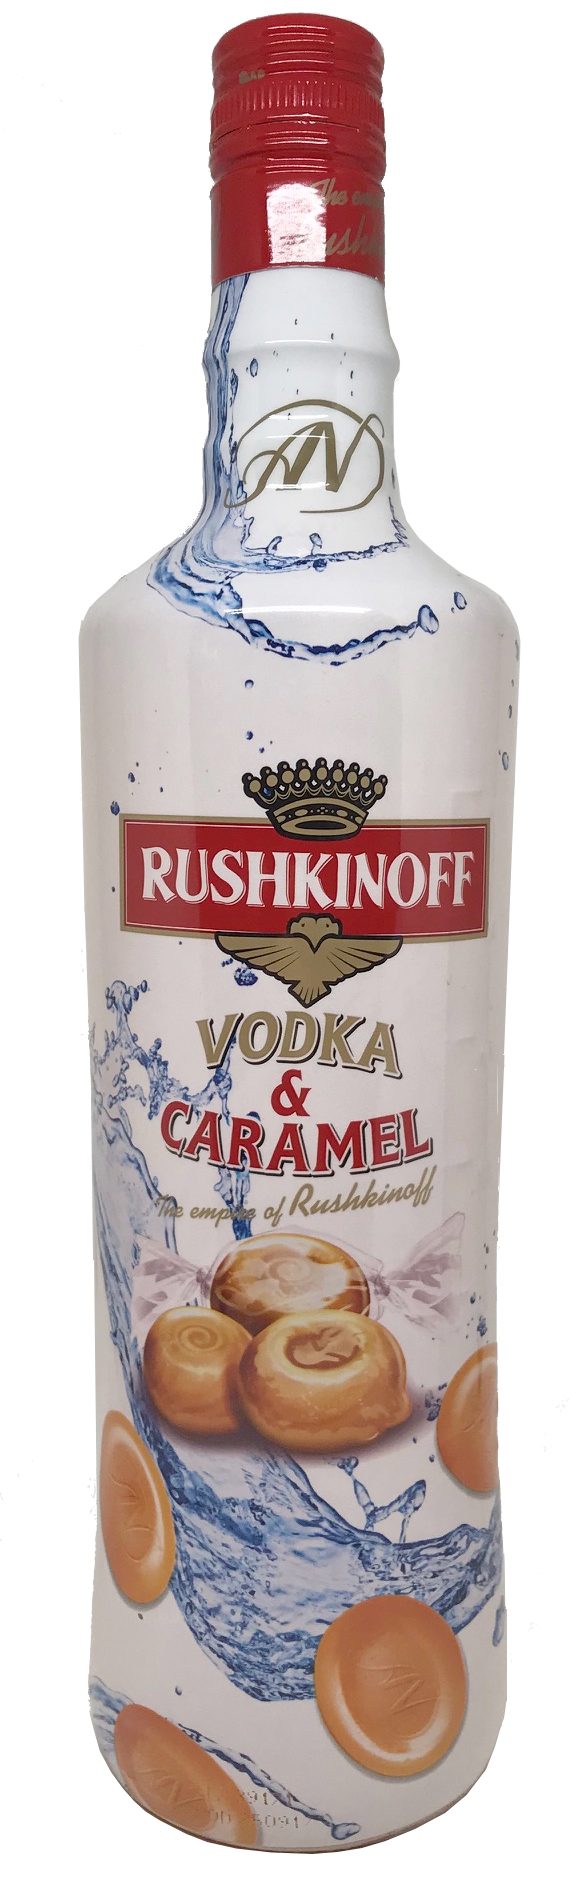 Rushkinoff Vodka & Caramel - Likör 18%vol.